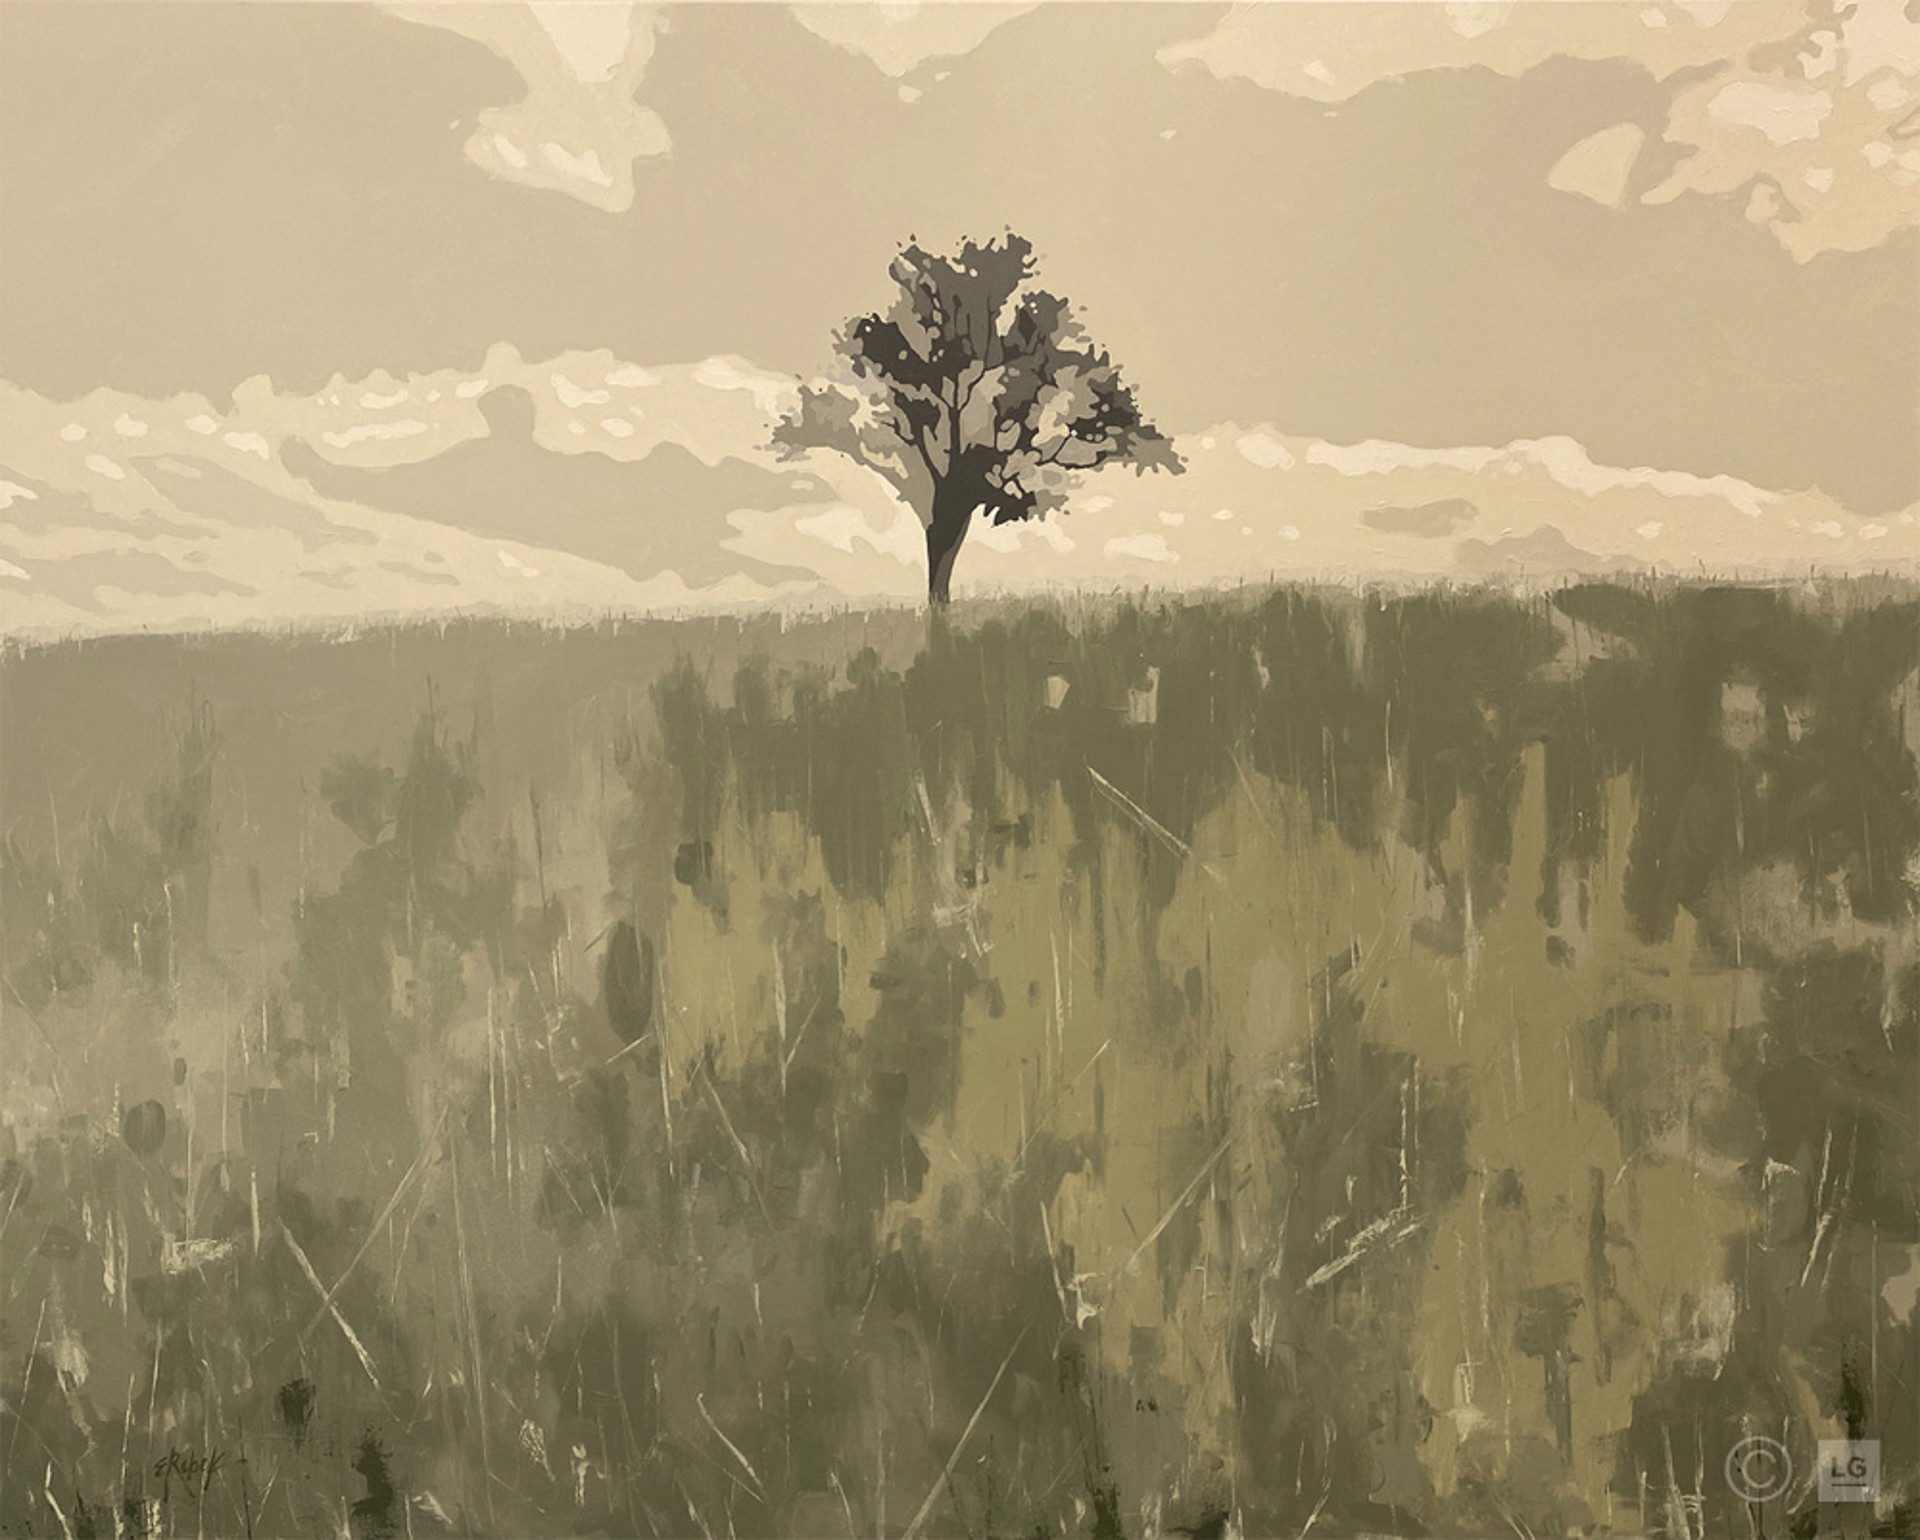 Alone in a Field by Edward Rebek